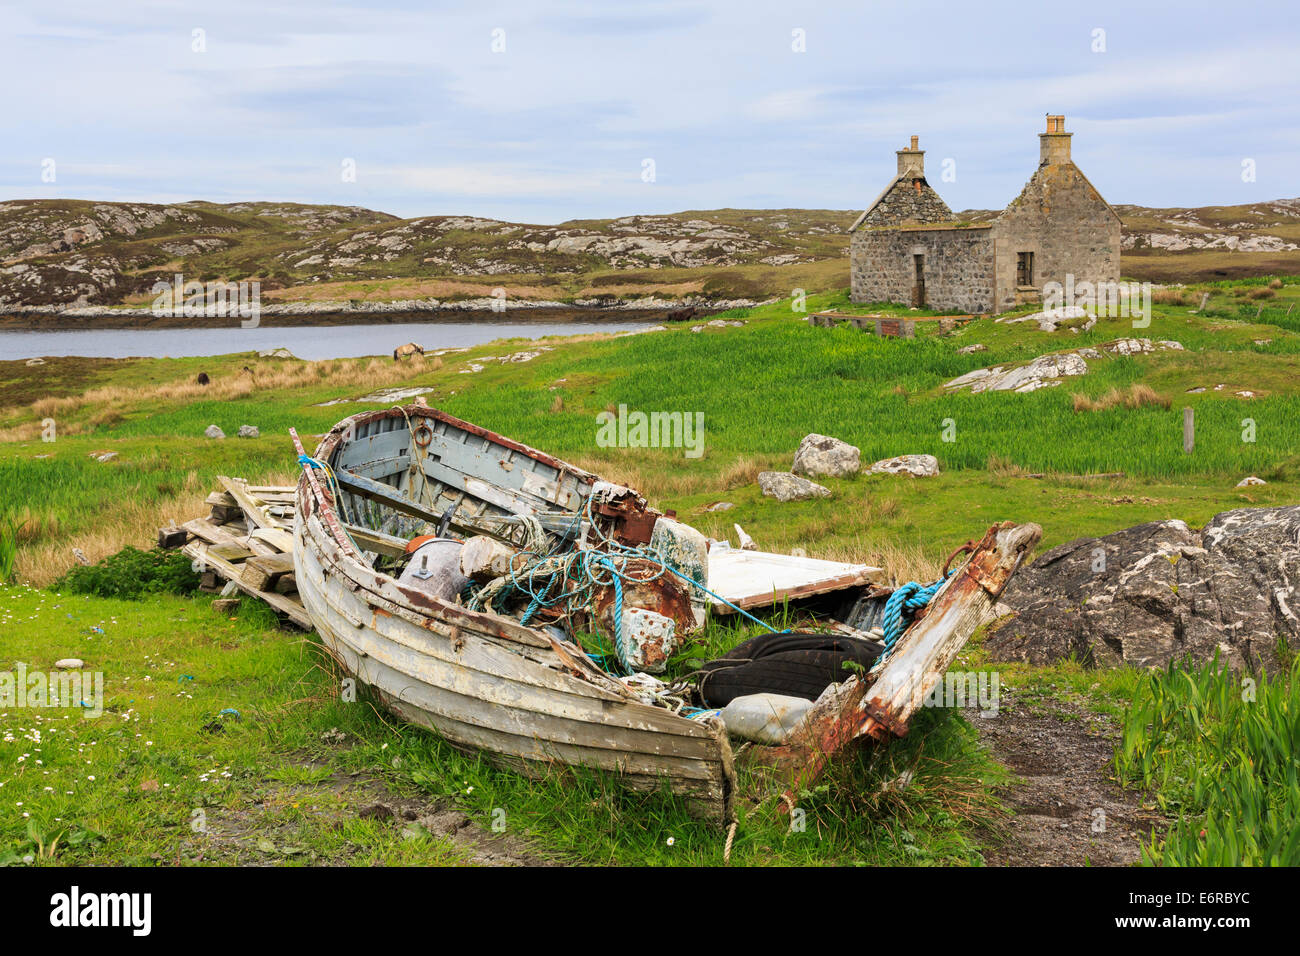 La scena delle Ebridi con la vecchia barca da pesca e abbandonata croft cottage nel paesaggio scozzese di Loch Sgioport, Sud Uist, Ebridi Esterne, Scotland, Regno Unito Foto Stock